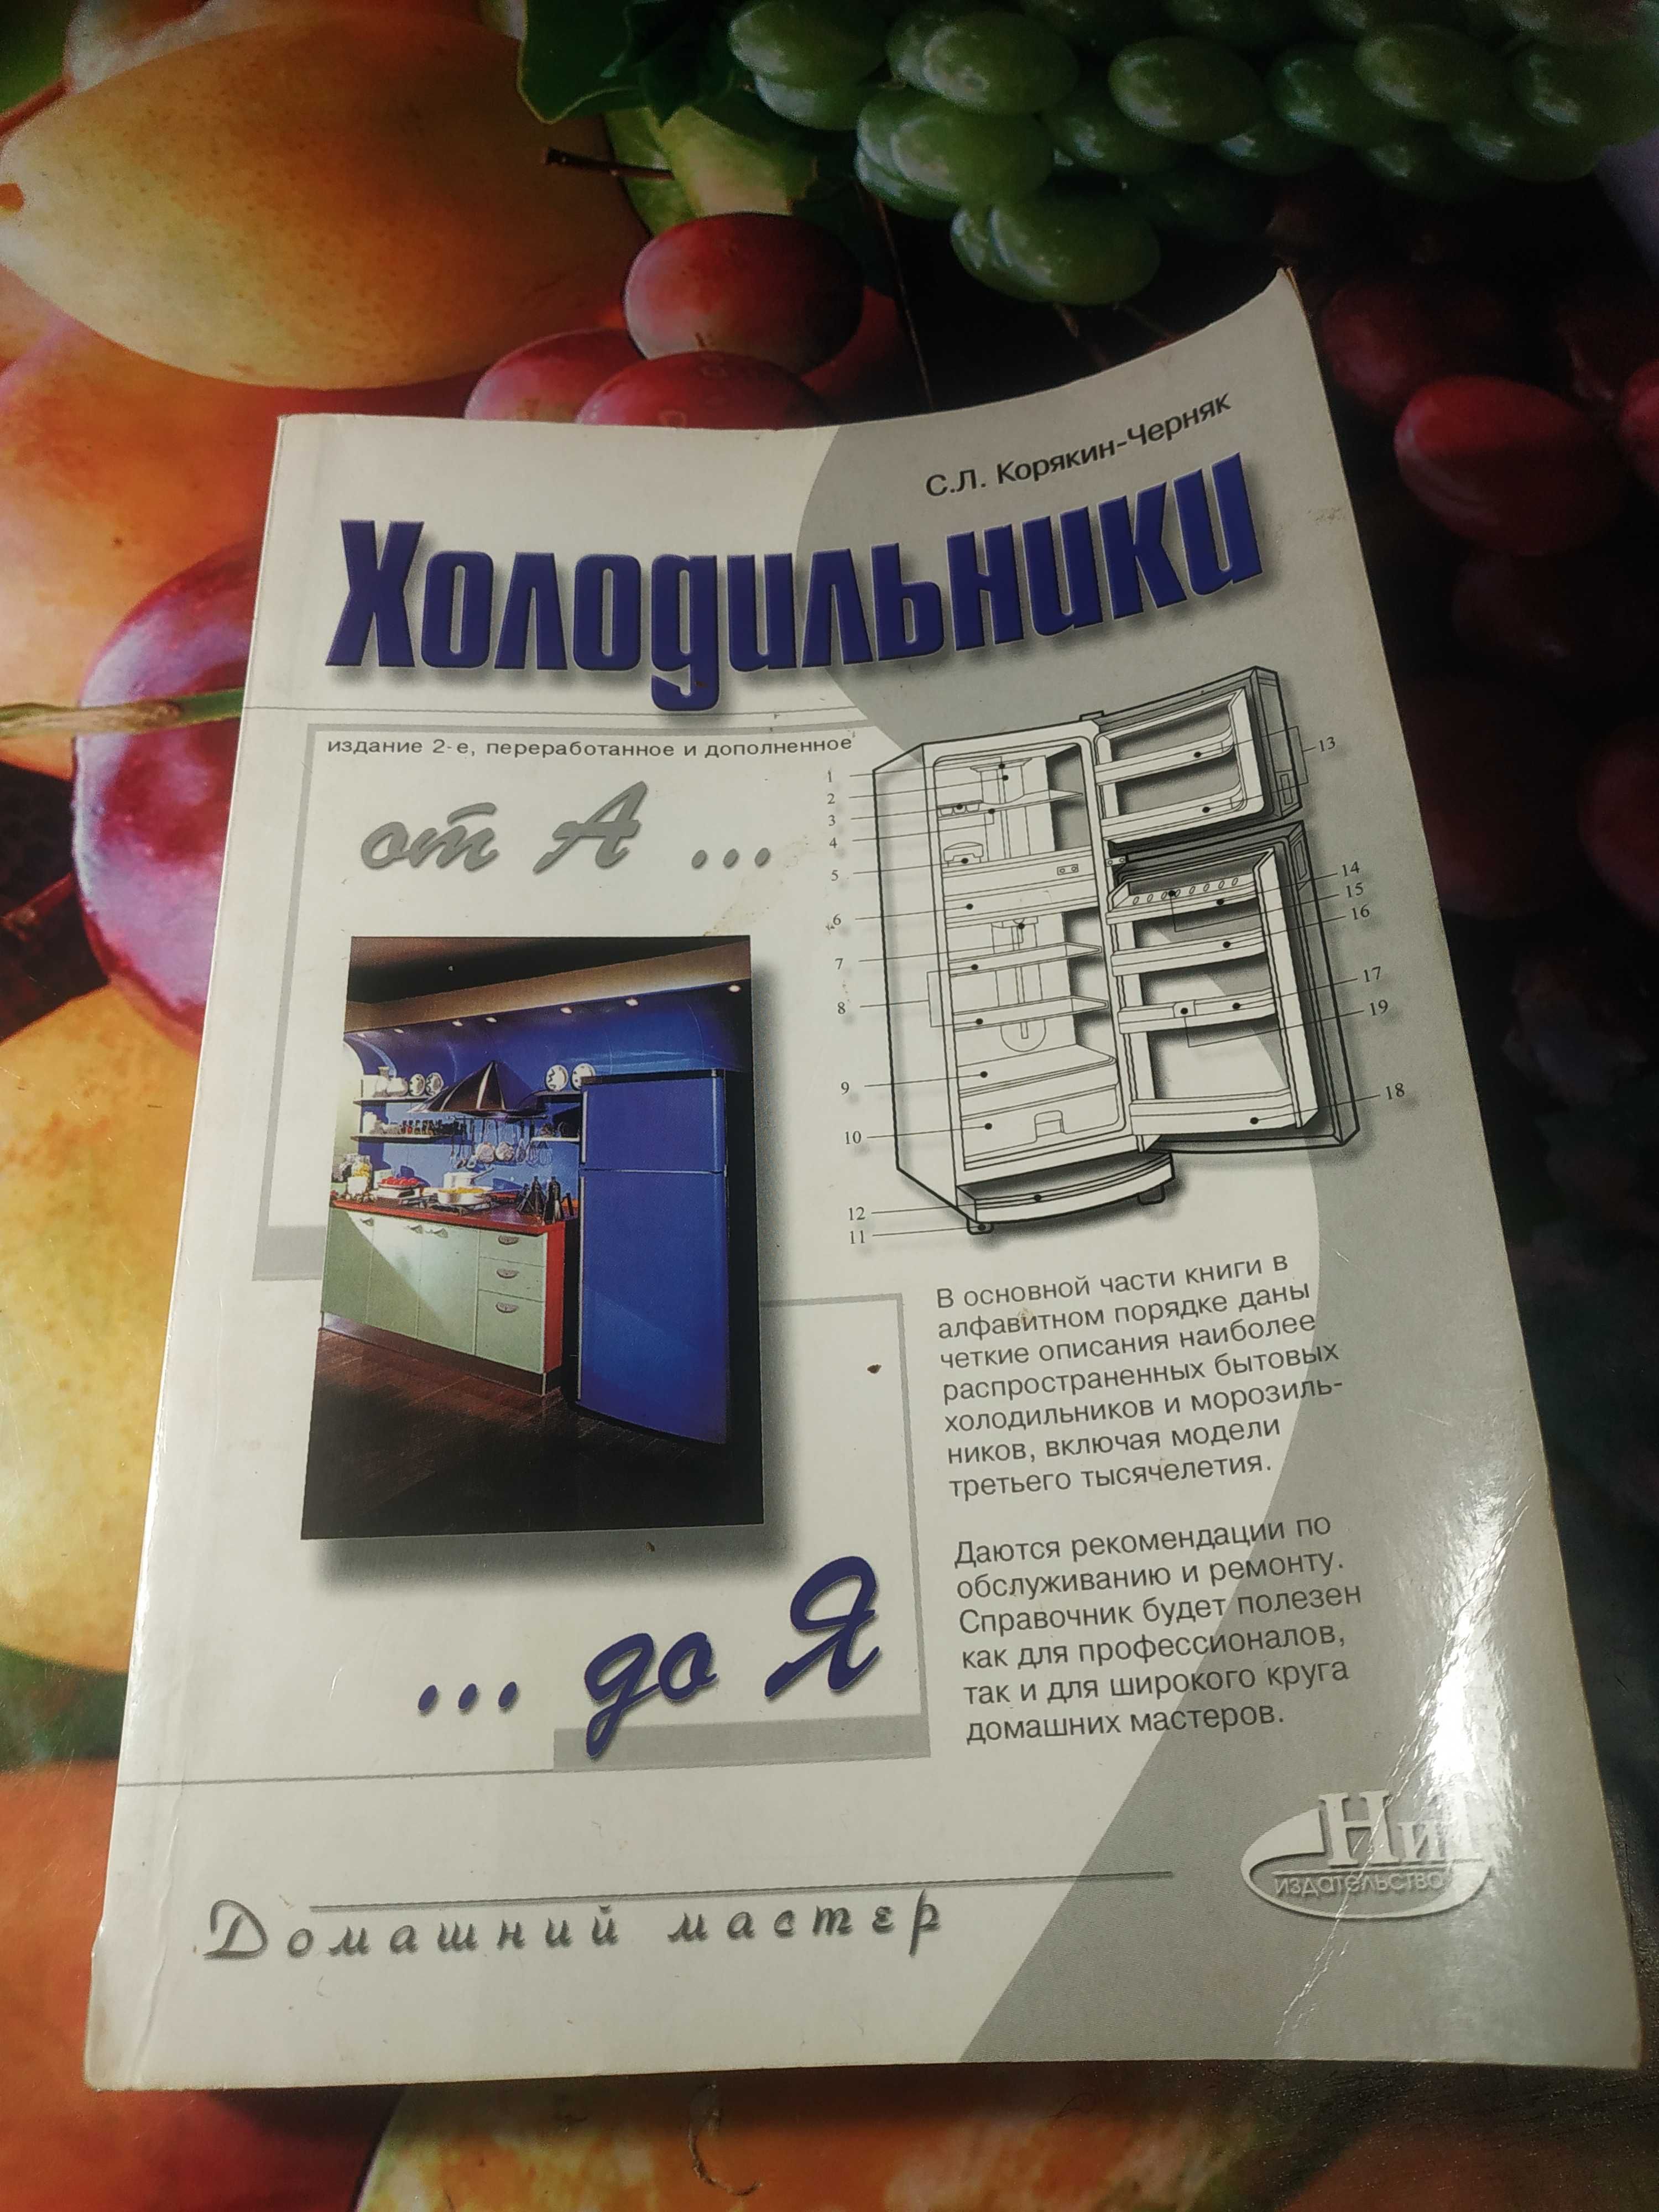 Корякин-Черняк С. Л. Холодильники